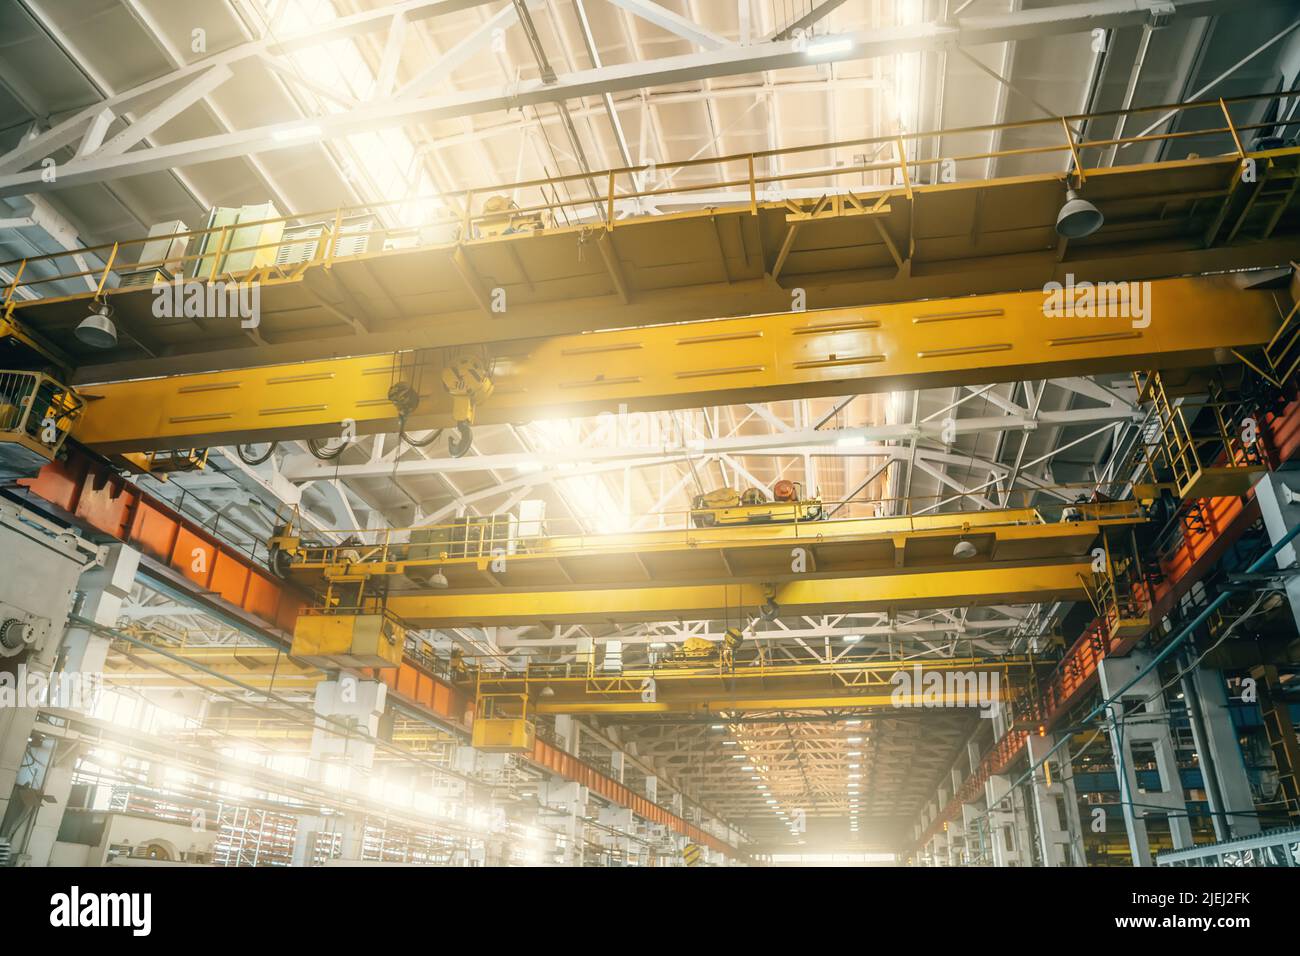 Yellow overhead or beam or bridge cranes in industrial metalworking factory. Stock Photo